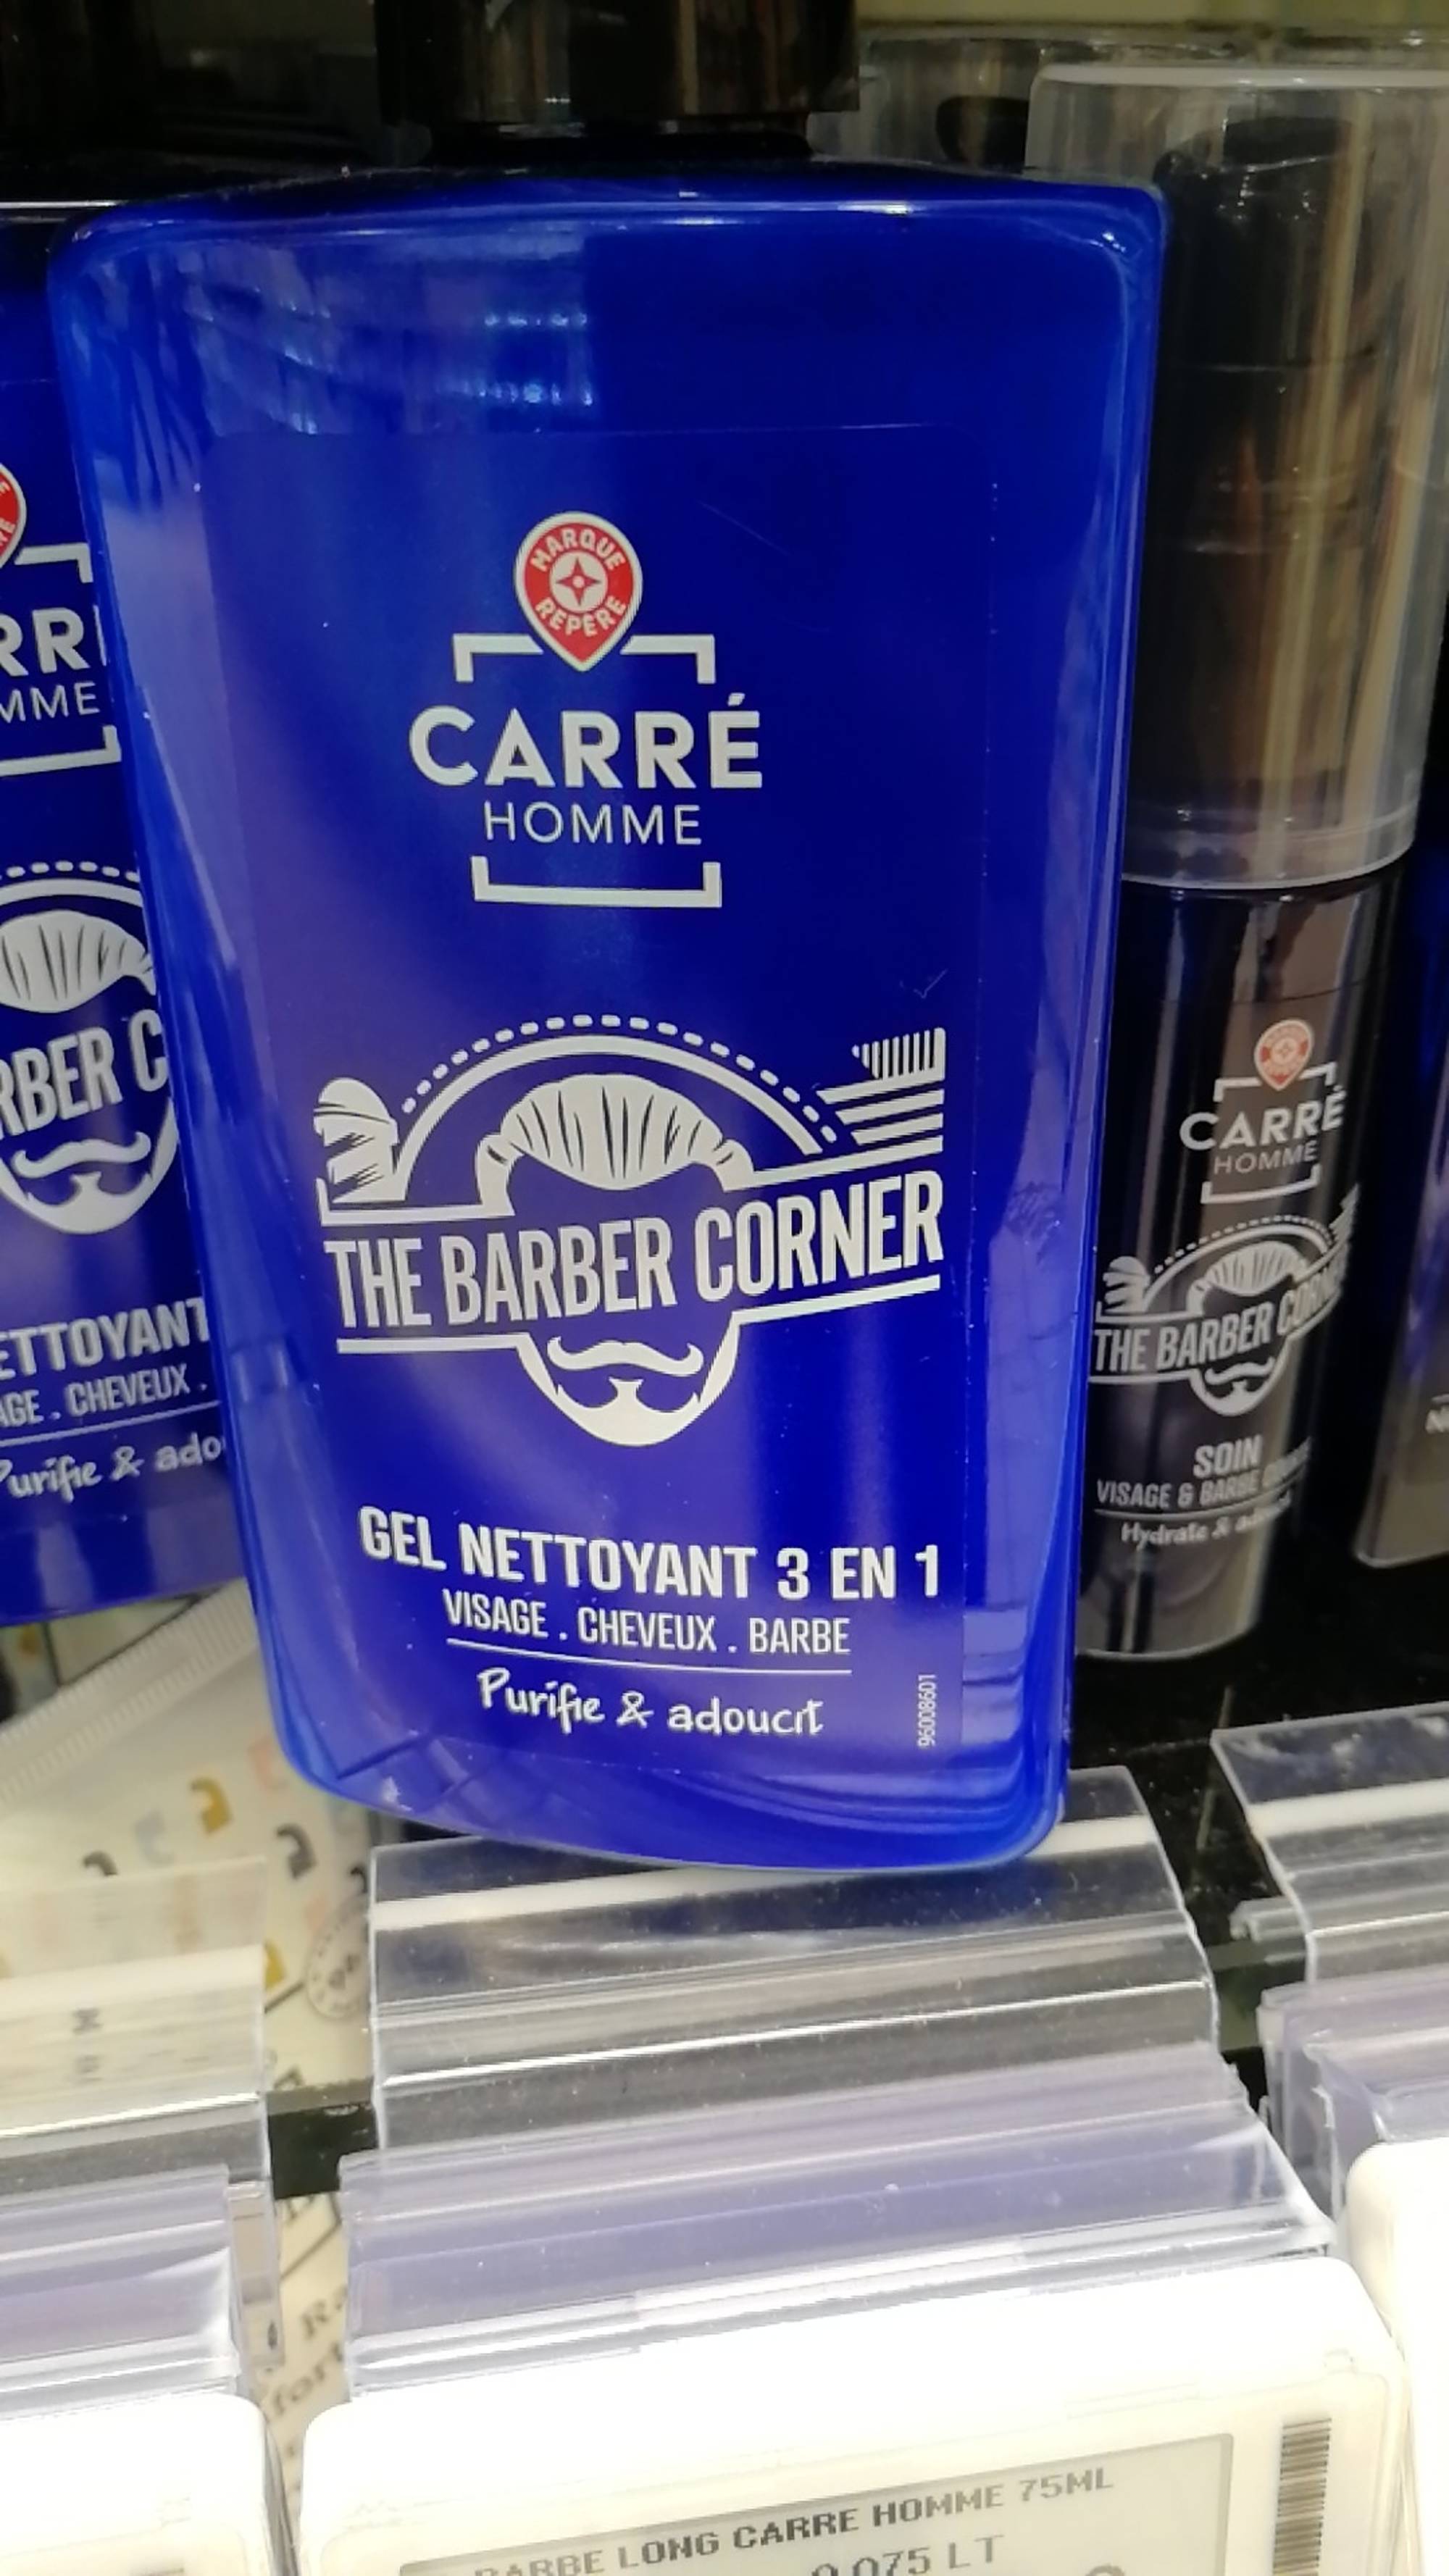 MARQUE REPÈRE - Carré homme the barber corner - Gel nettoyant 3 en 1